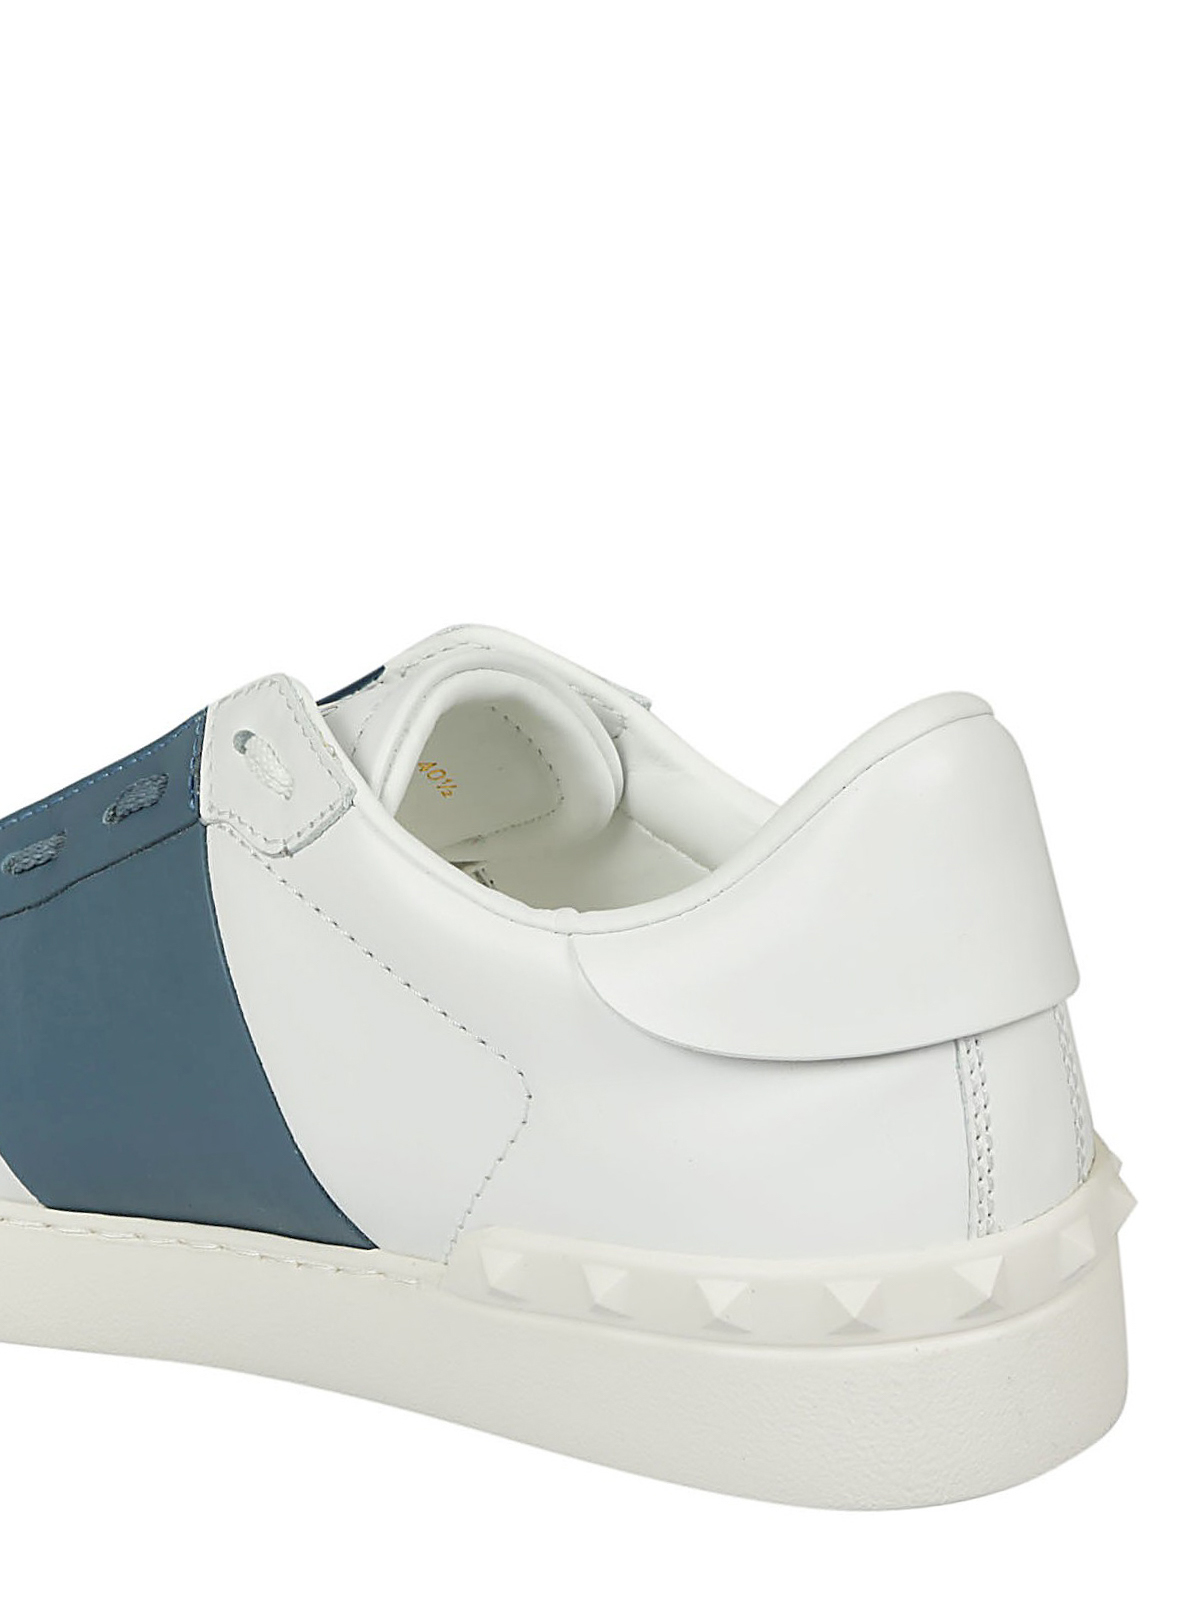 Valentino Garavani Open White And Blue Sneakers New